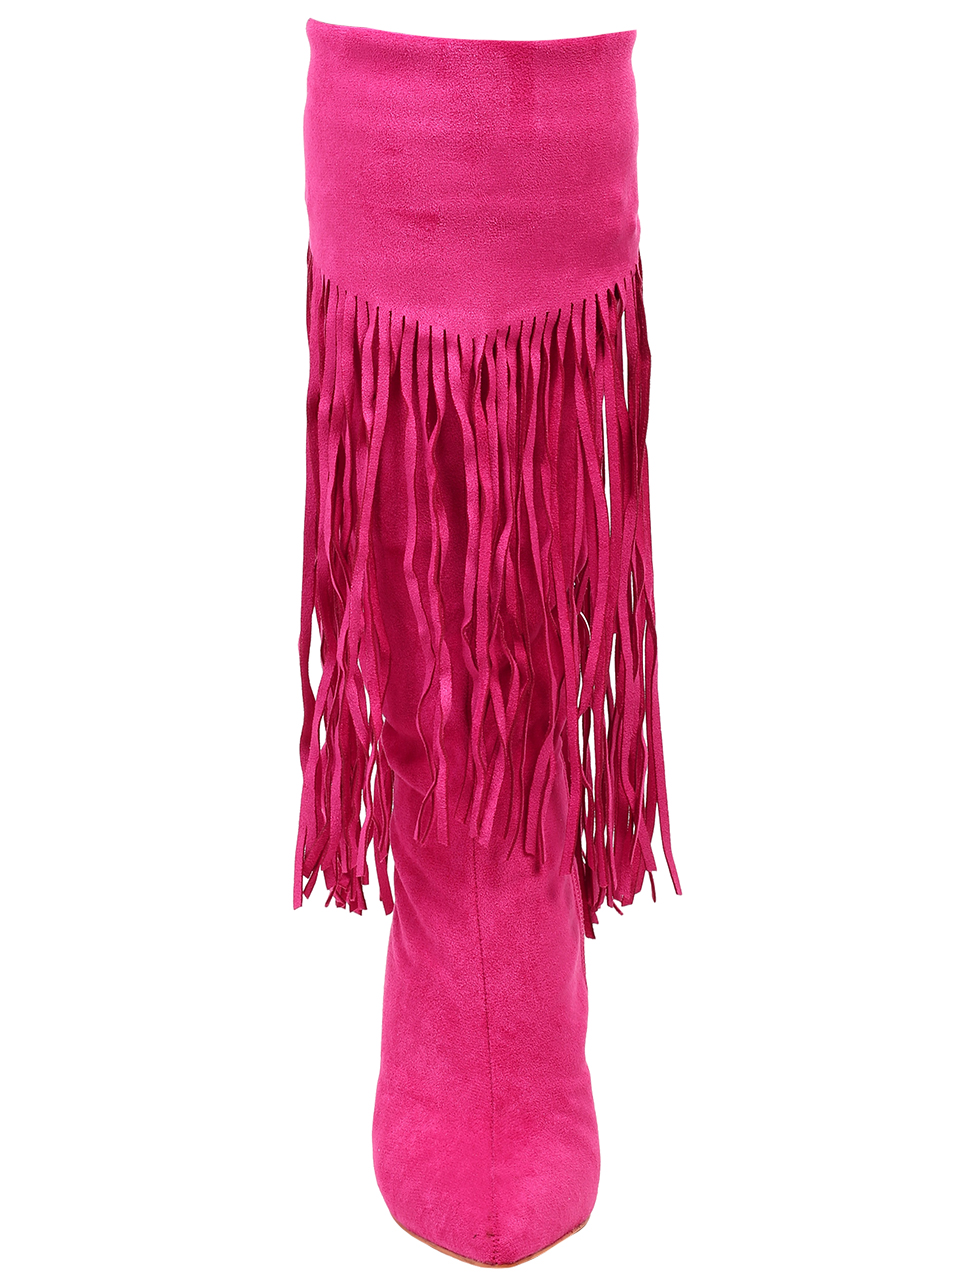 Елегантни дамски ботуши с декоративни ресни в цвят фуксия 1M-23588 fuchsia